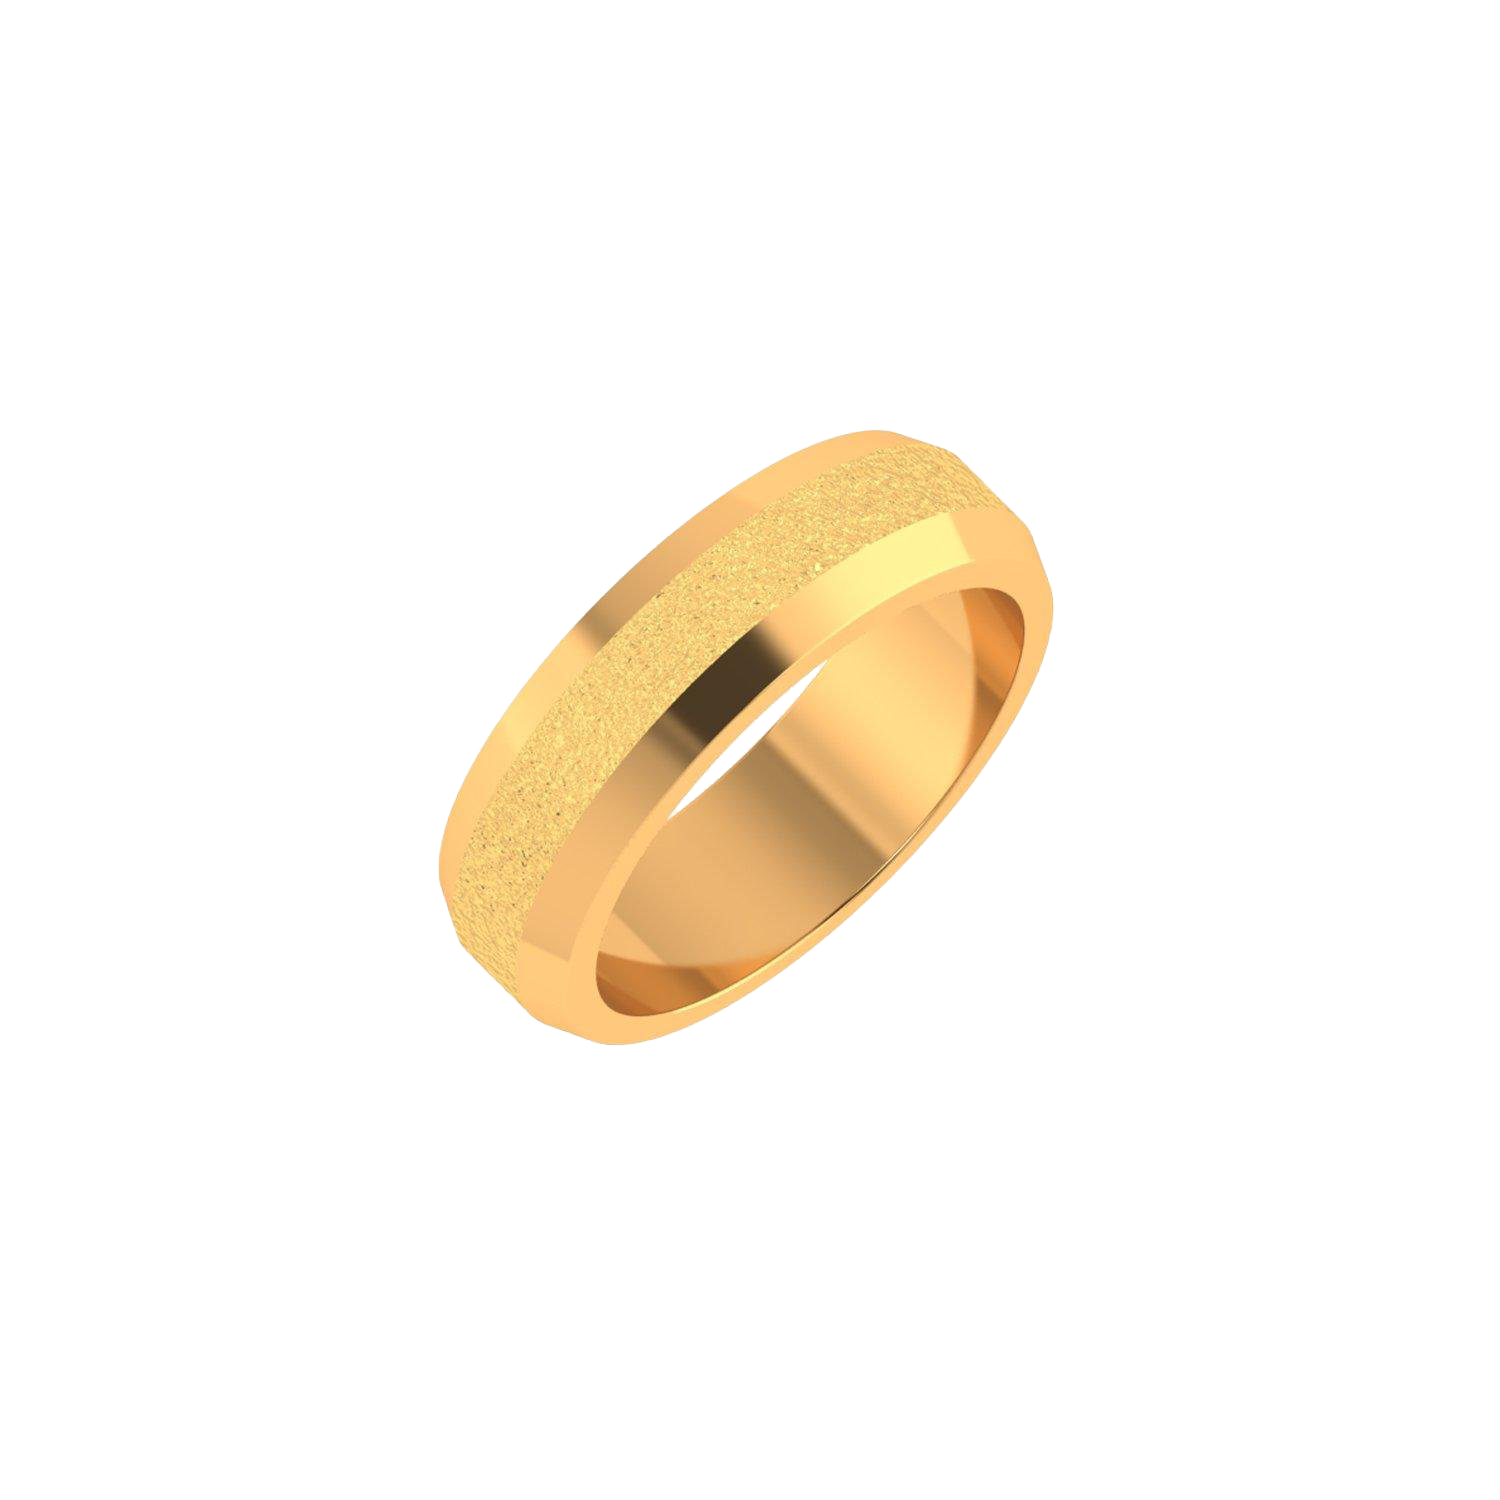 แหวนหมั้นทองคำ PNG ภาพที่มีคุณภาพสูง